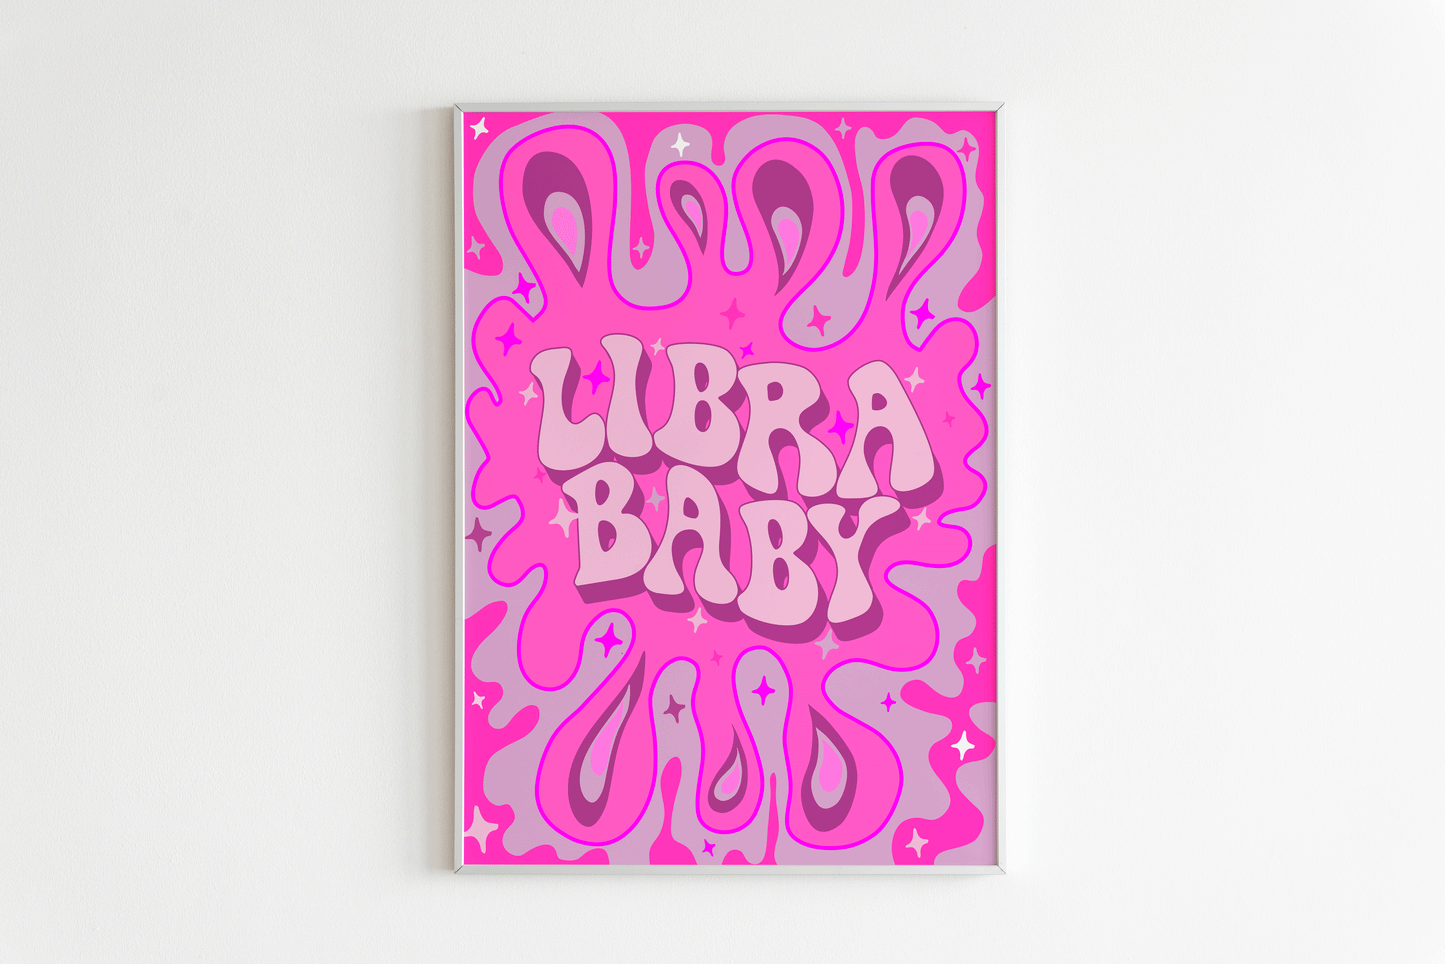 Libra Wall Print - PrintedWeird